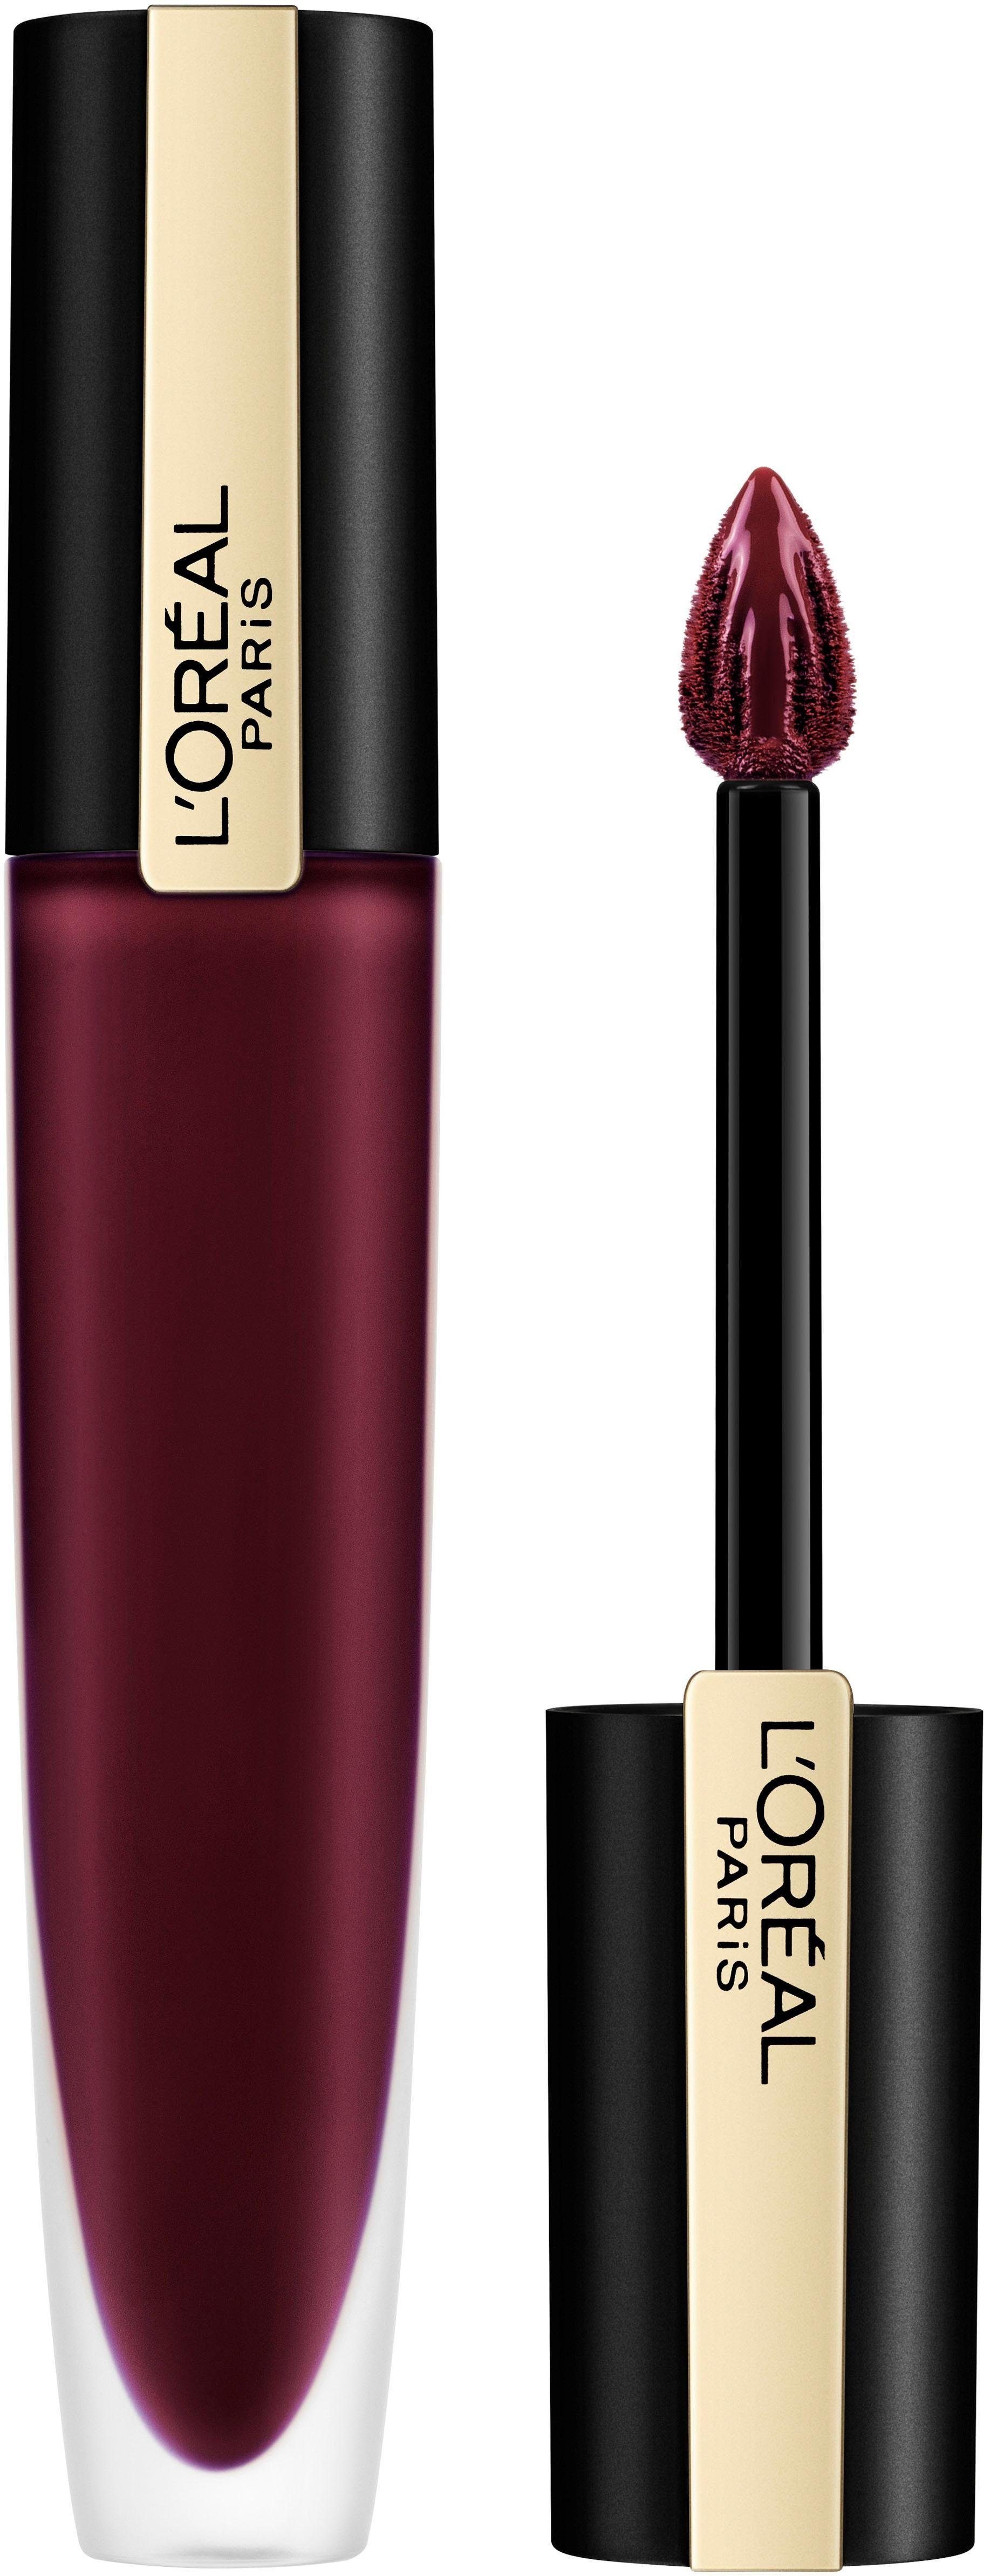 L'ORÉAL PROFESSIONNEL PARIS L'ORÉAL PARIS 205 Fascinate Metallic Lippenstift Rouge I Signature